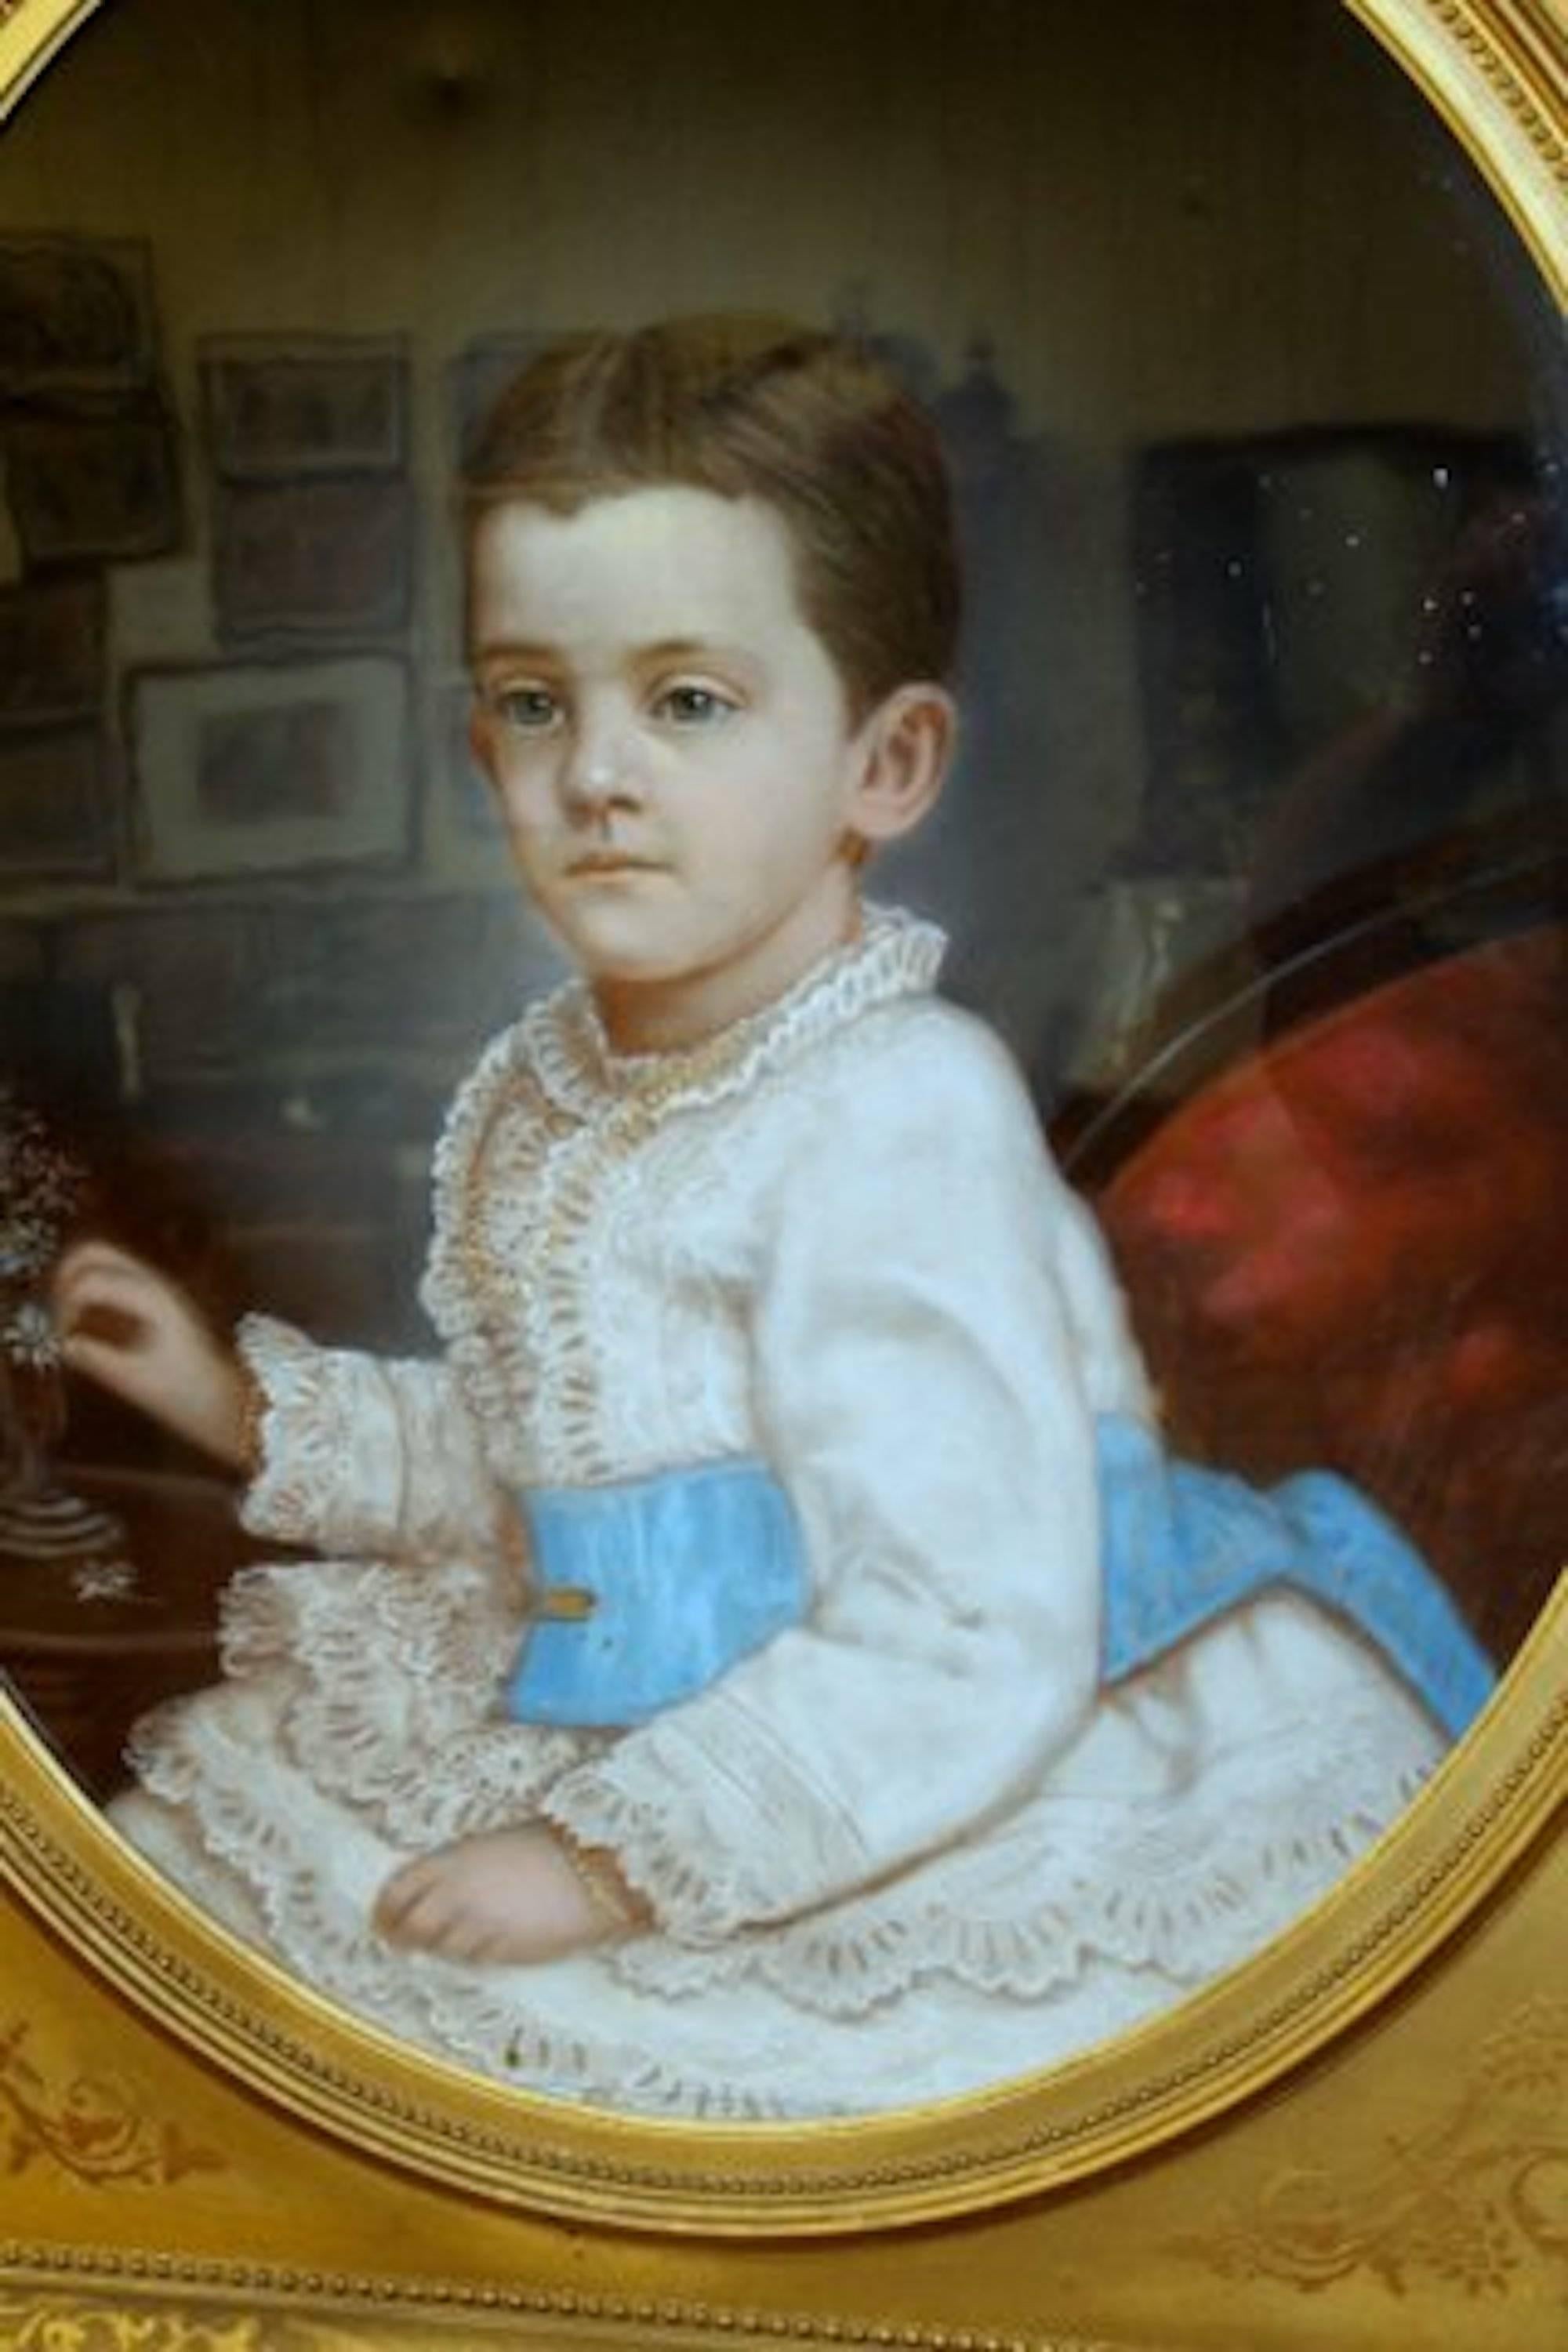 Fabelhaftes antikes französisches Porträt eines Jungen, Originalpastell, Originalrahmen (Künstler unbekannt und offenbar unsigniert)

Original-Blattgoldrahmen (einige Gold Verlust festgestellt) Porträt ist in tadellosem Zustand. Es wurde unter dem